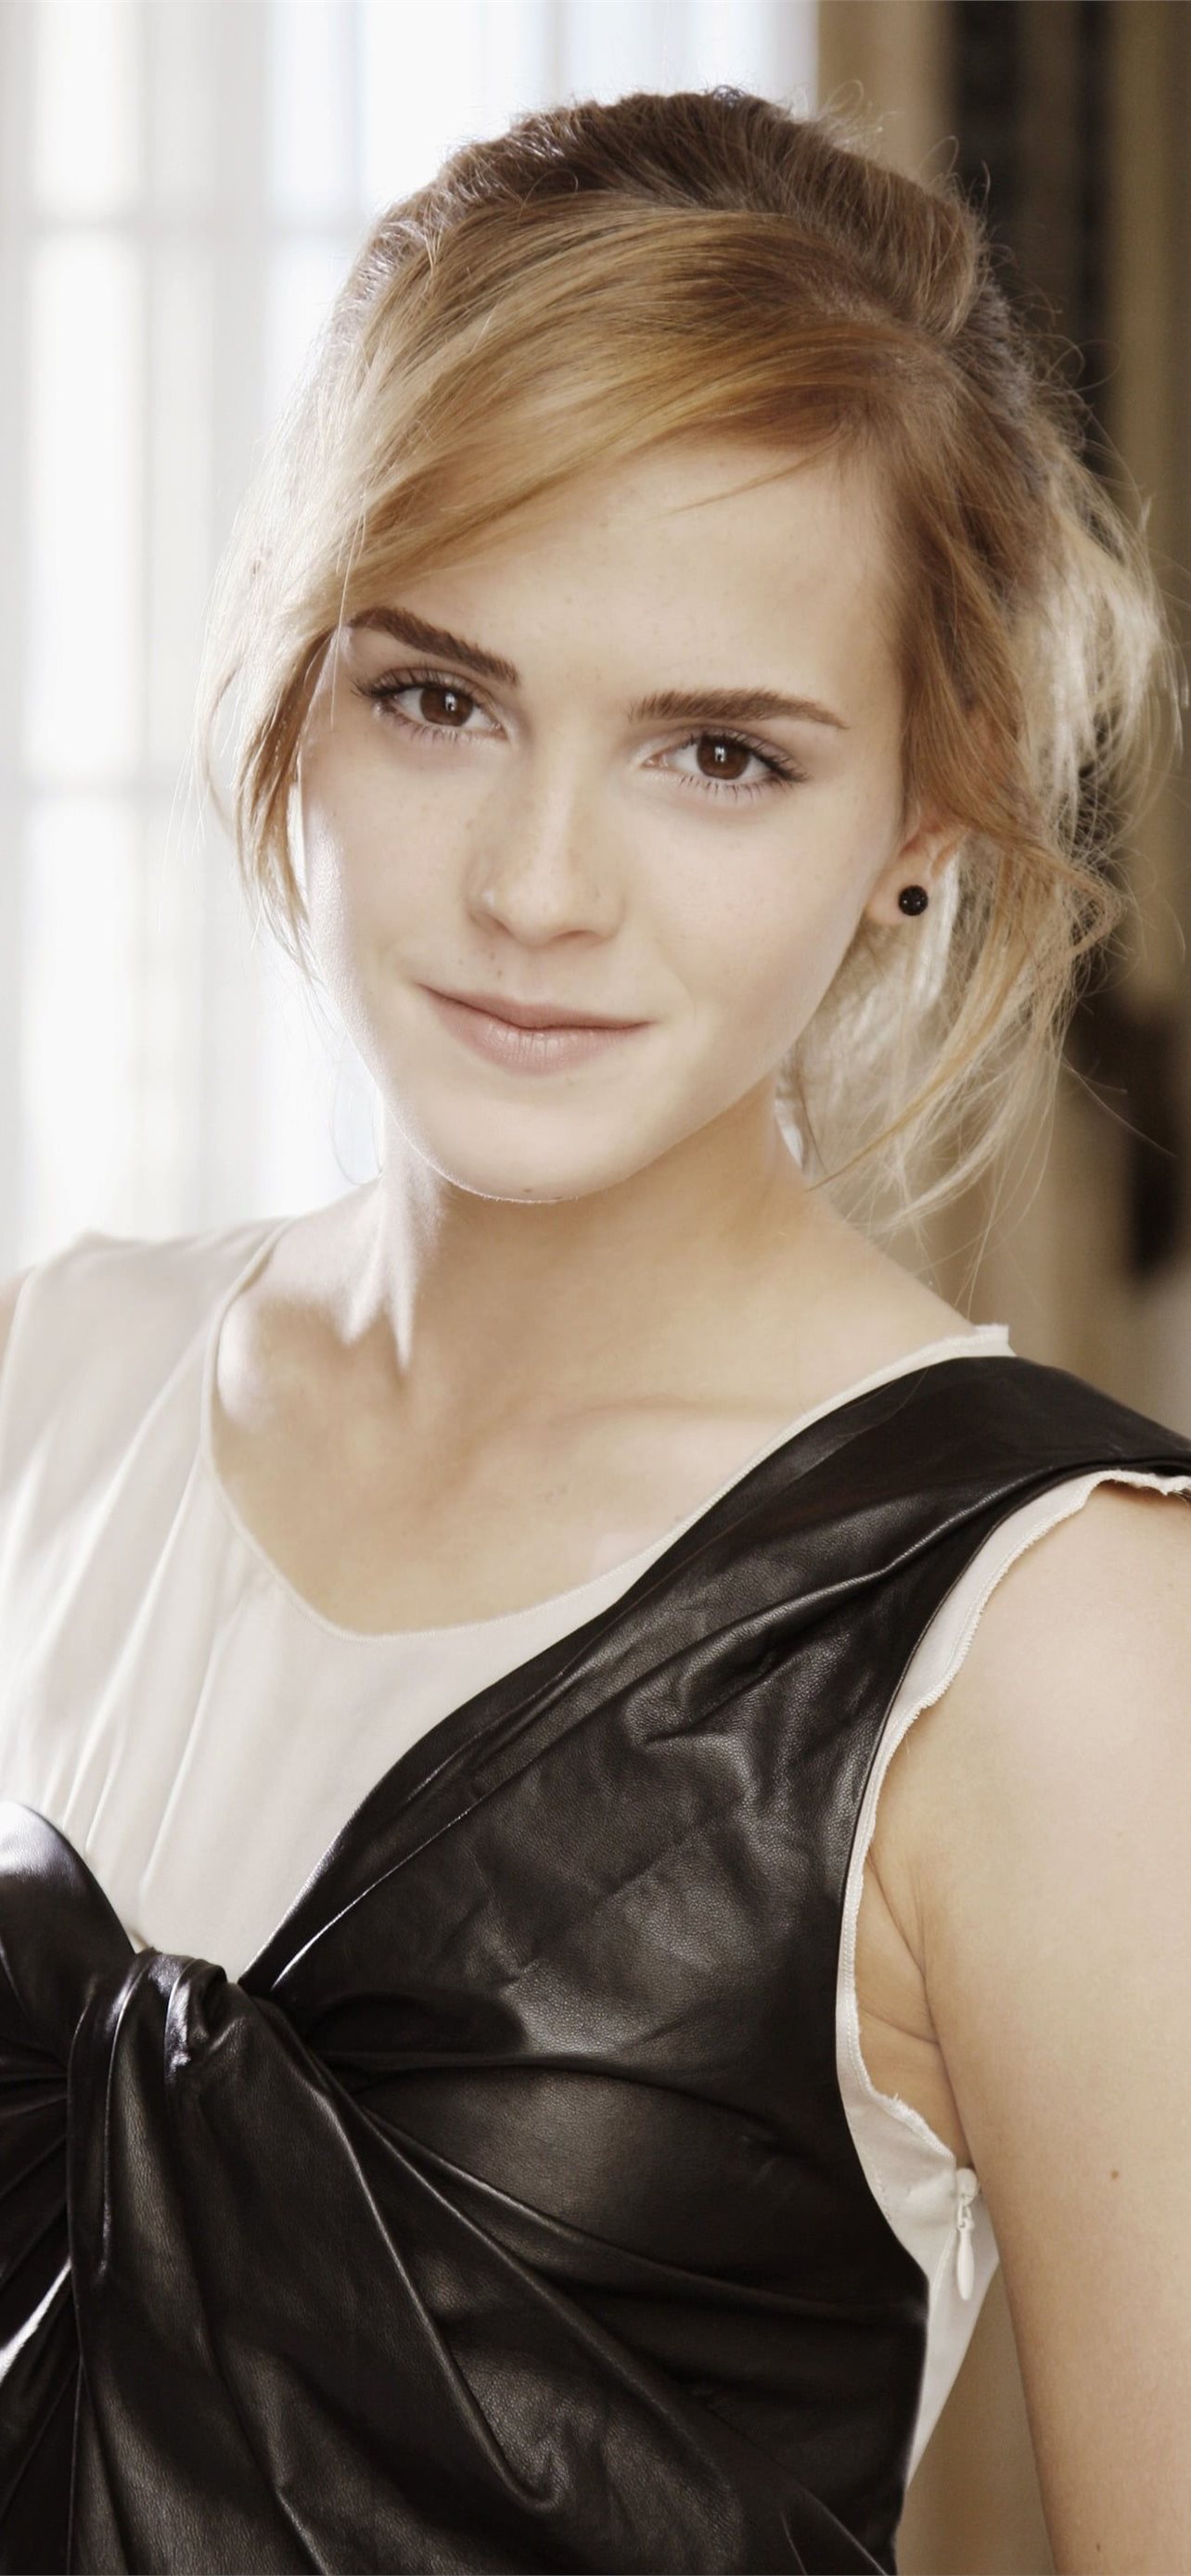 Emma Watson celebrity actress women portrait displ... iPhone Wallpapers ...